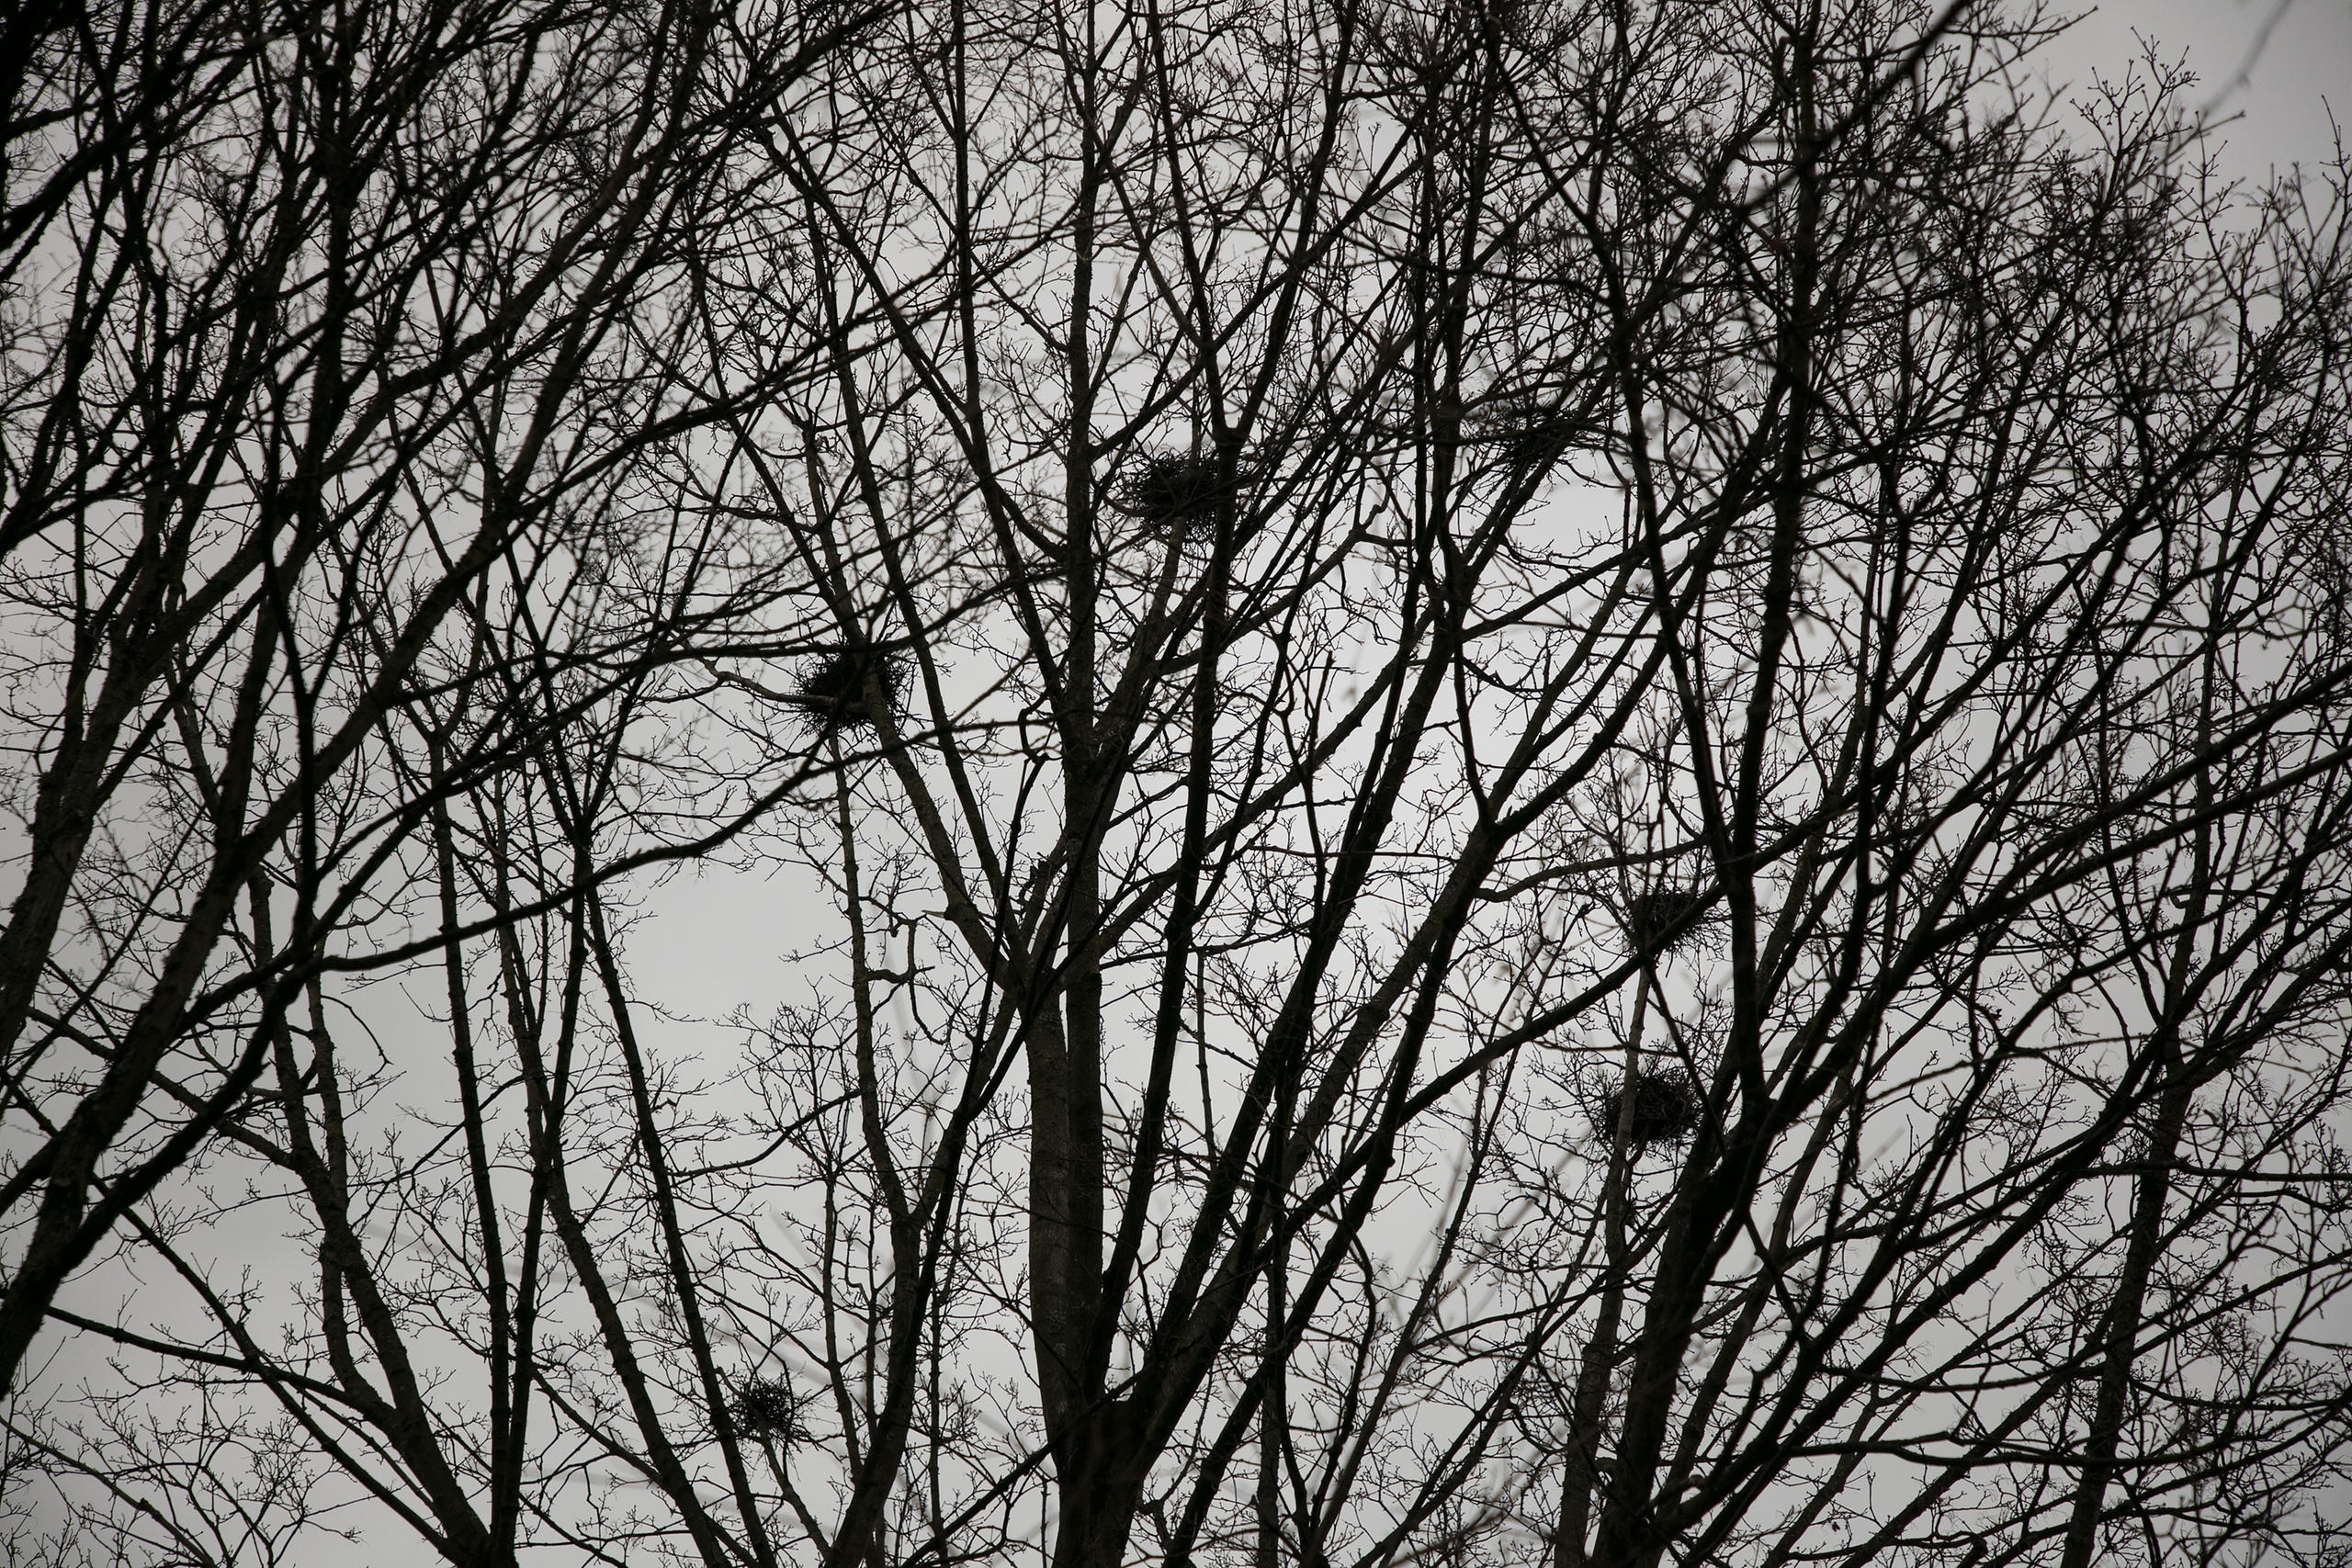 Ninhos de corvo em árvores da cidade de Berna.